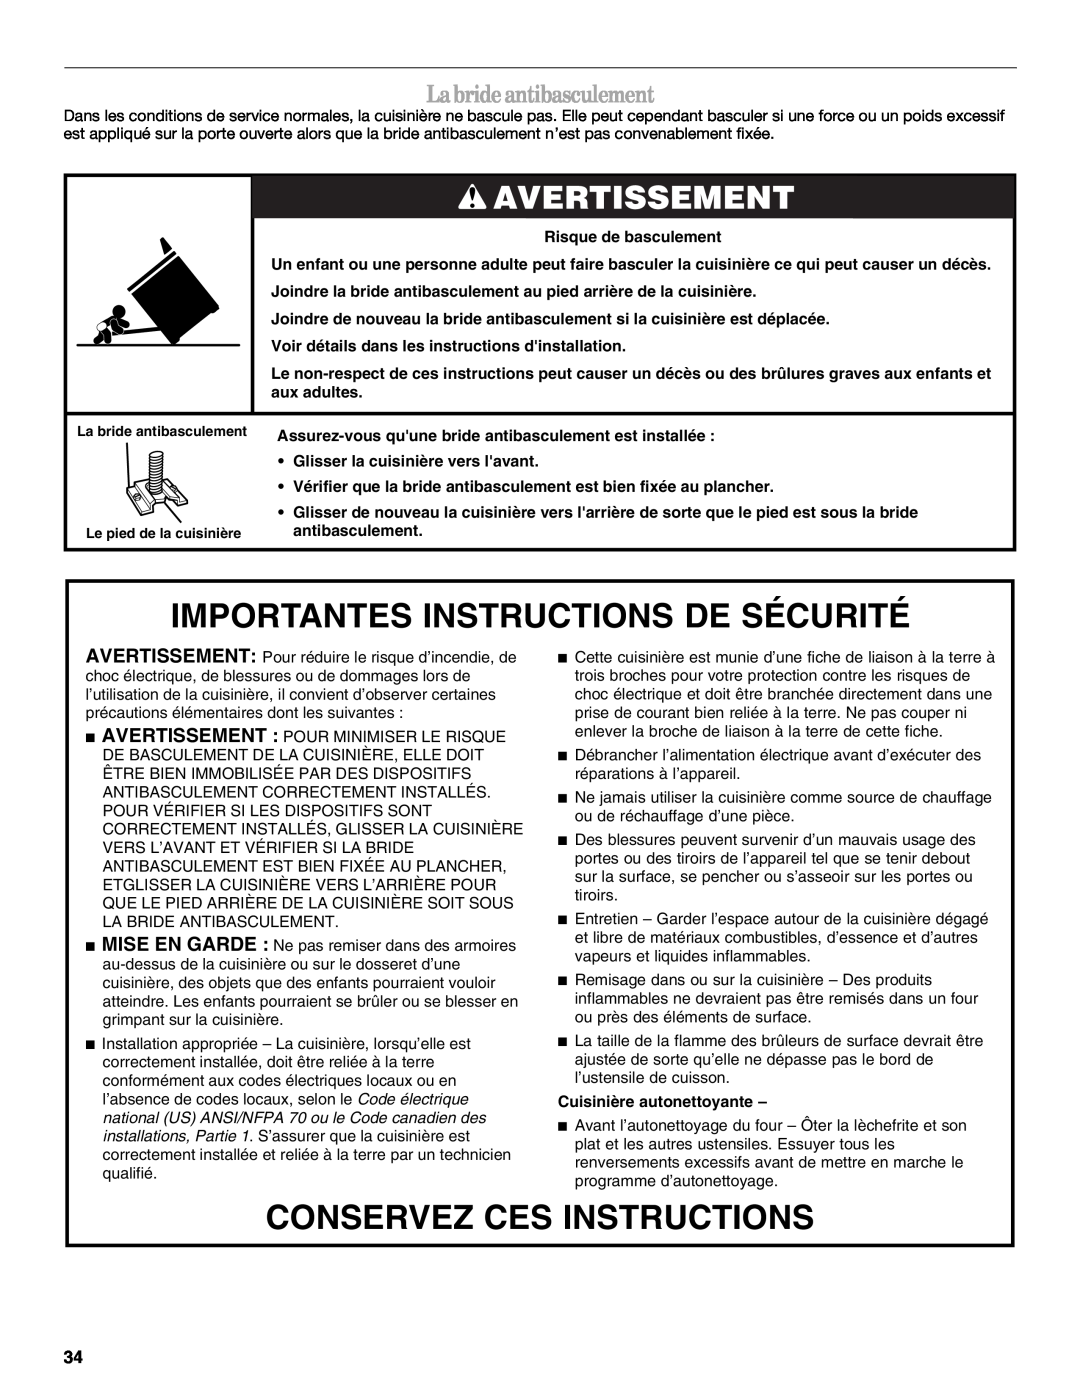 Whirlpool SF315PEPB1 manual Importantes Instructions De Sécurité, Conservez Ces Instructions, Avertissement 